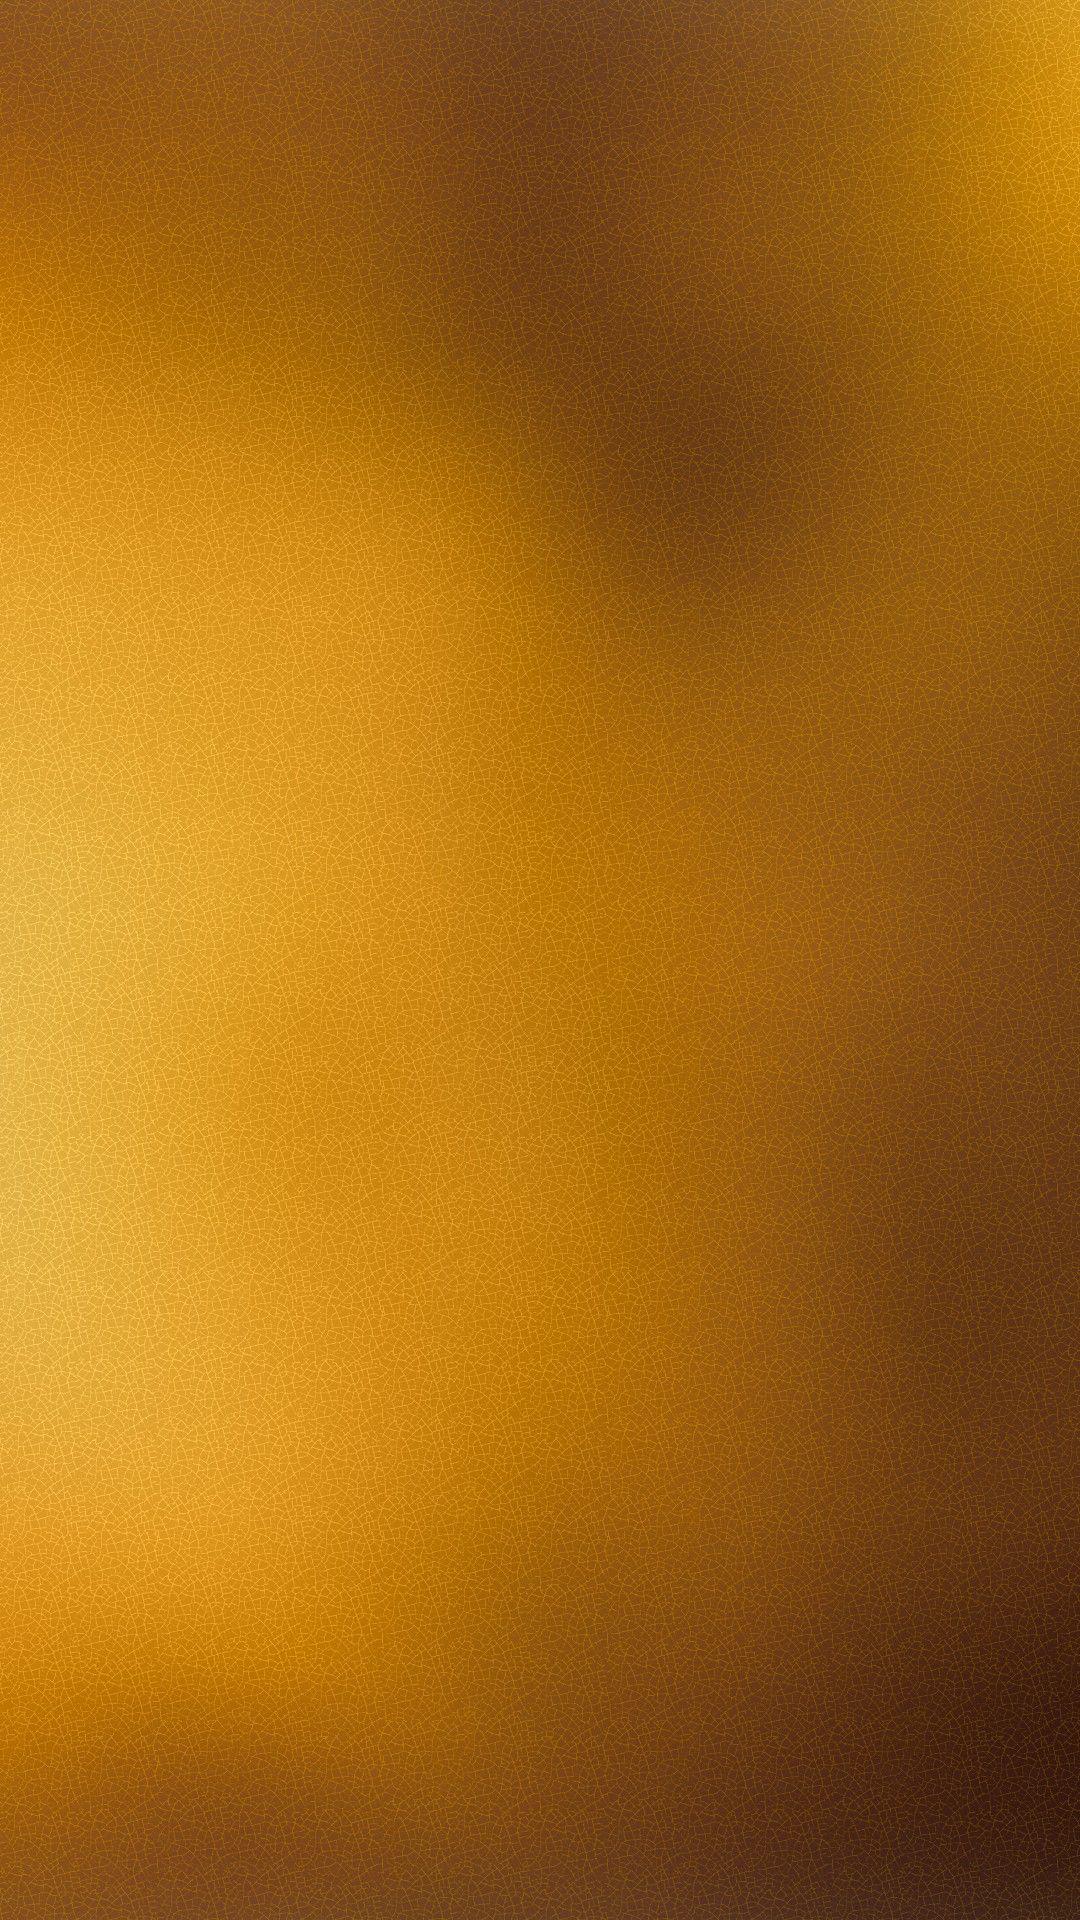 iPhone Wallpaper Plain Gold iPhone Wallpaper. Gold